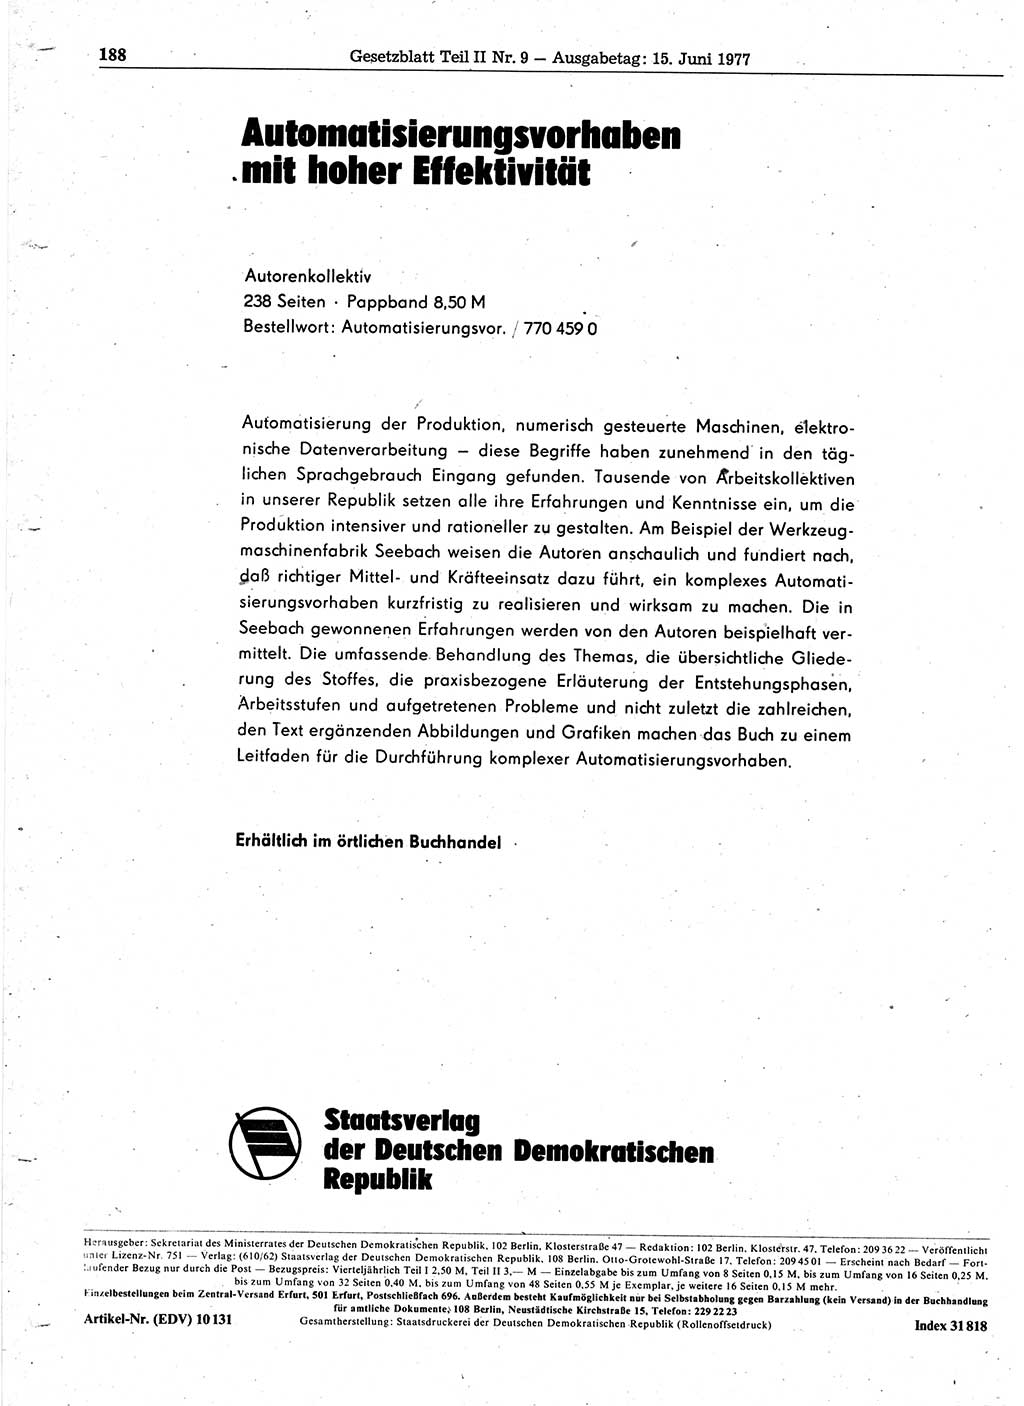 Gesetzblatt (GBl.) der Deutschen Demokratischen Republik (DDR) Teil ⅠⅠ 1977, Seite 188 (GBl. DDR ⅠⅠ 1977, S. 188)